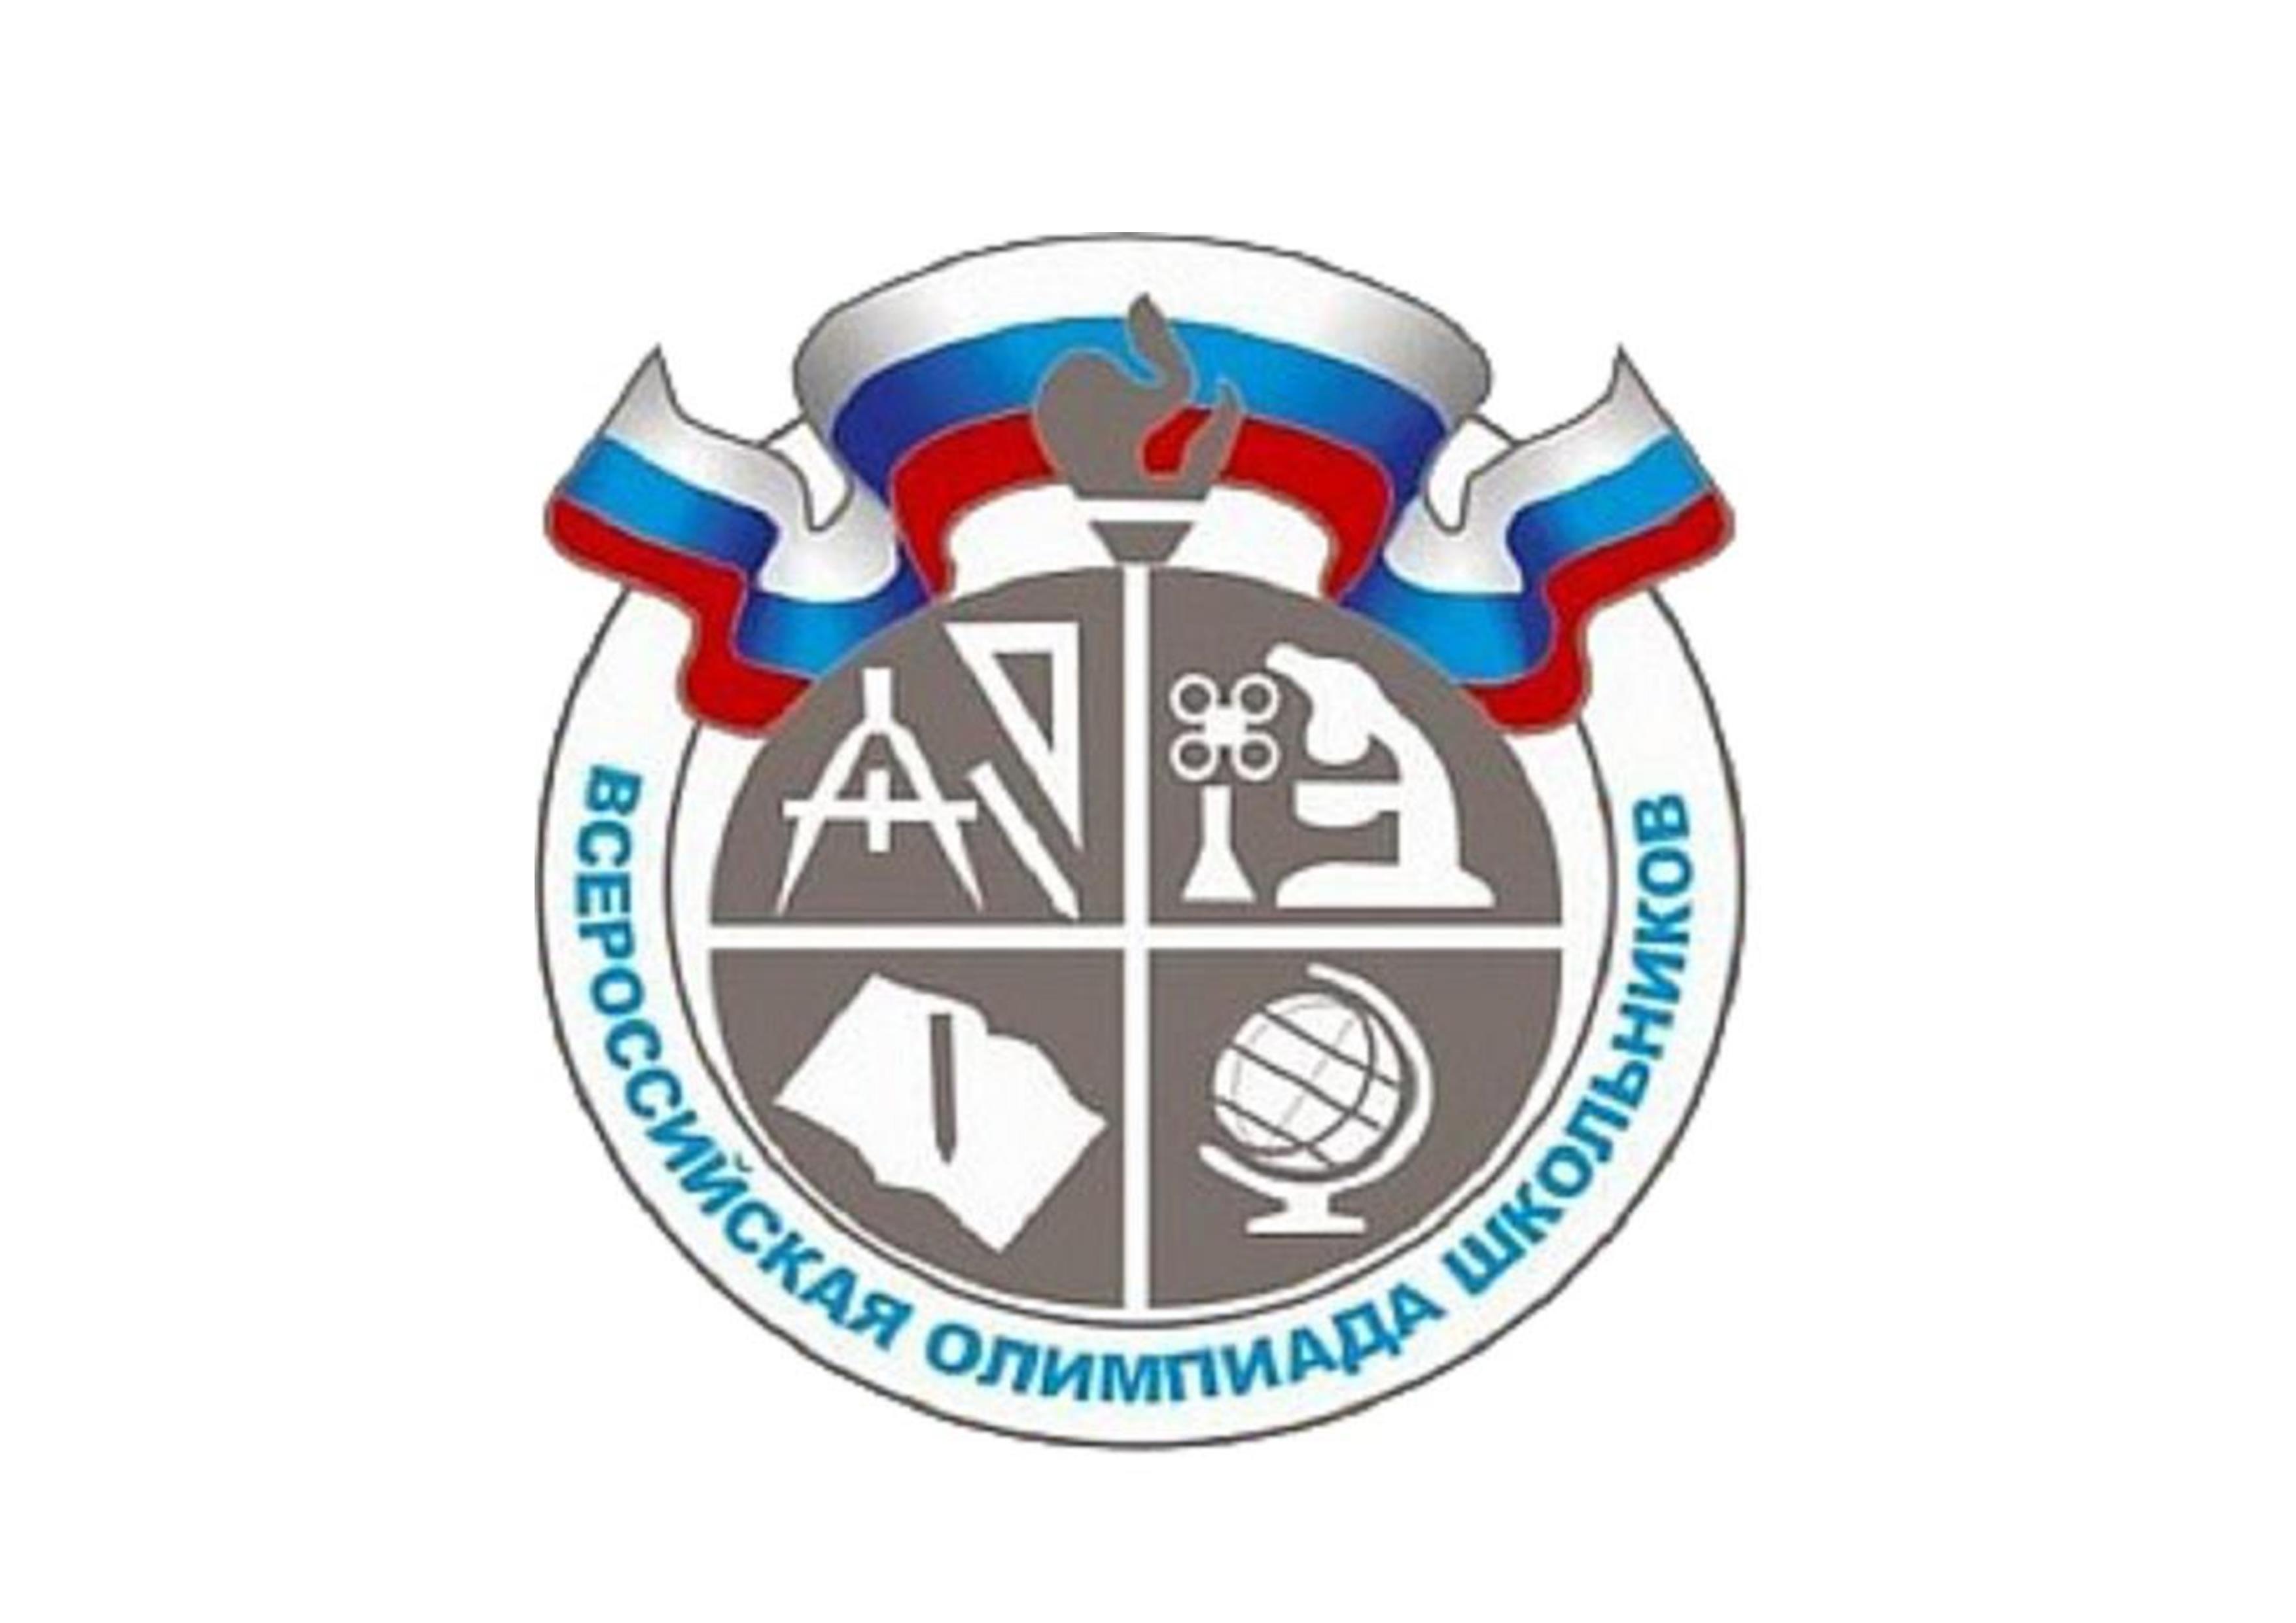 Всероссийская олимпиада школьников (региональный этап).